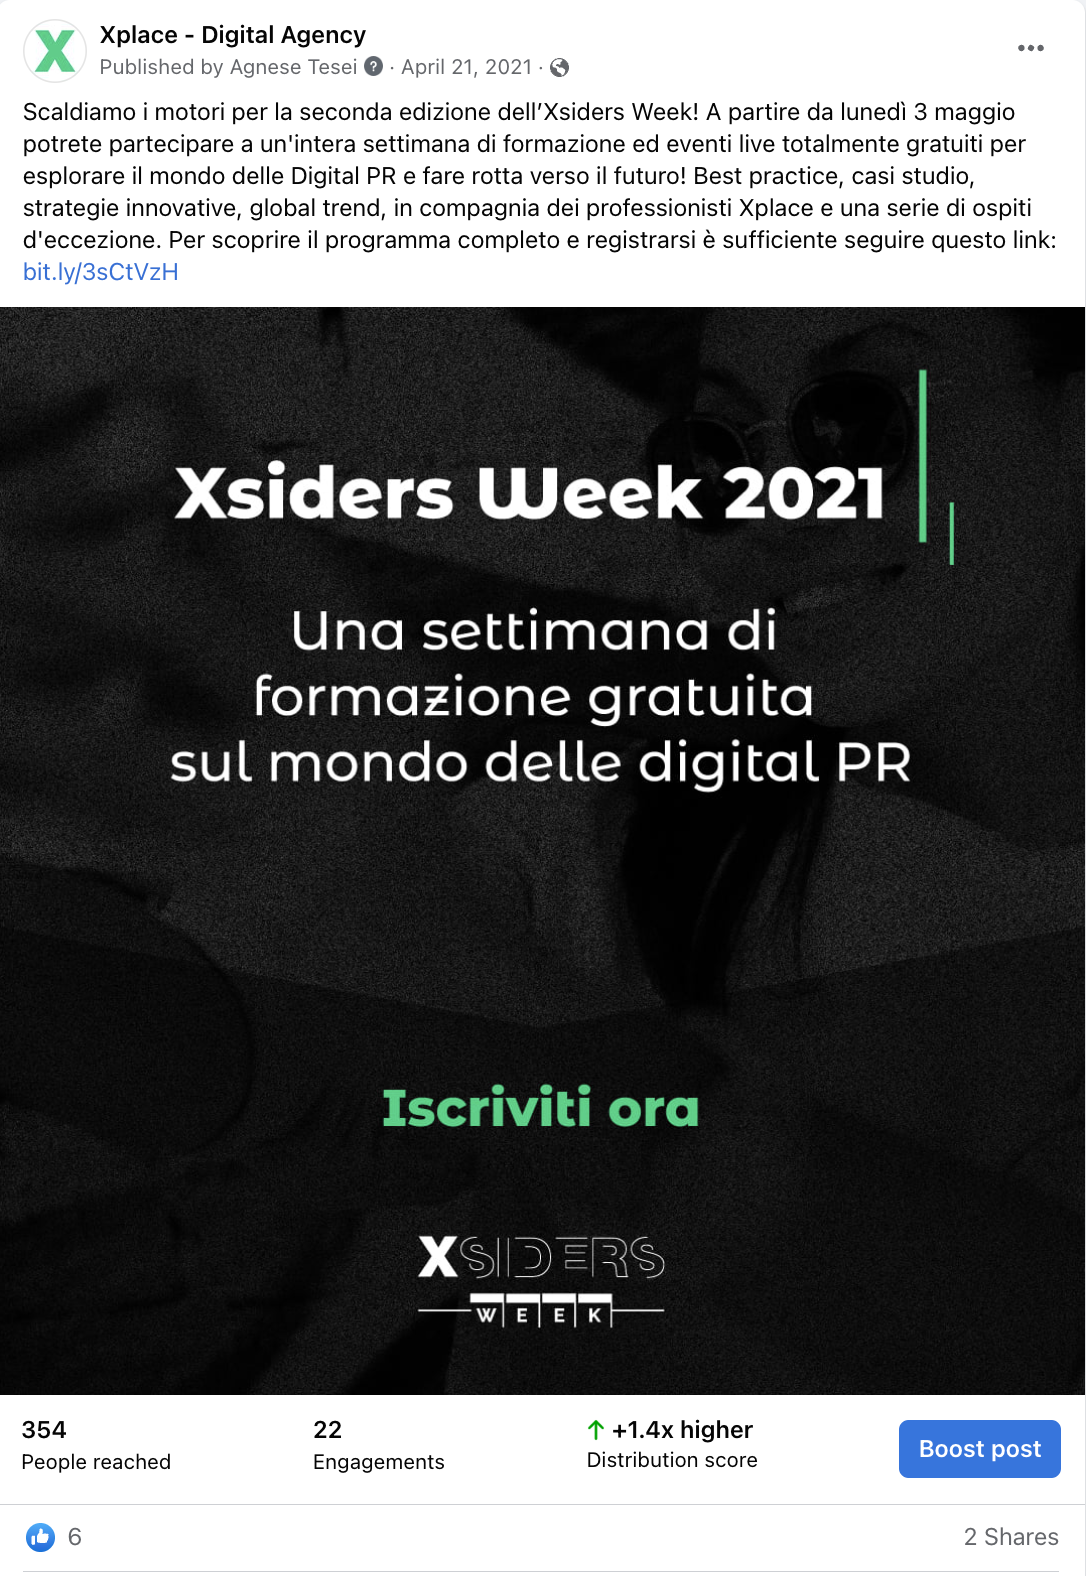 Seconda edizione della Xsiders Week